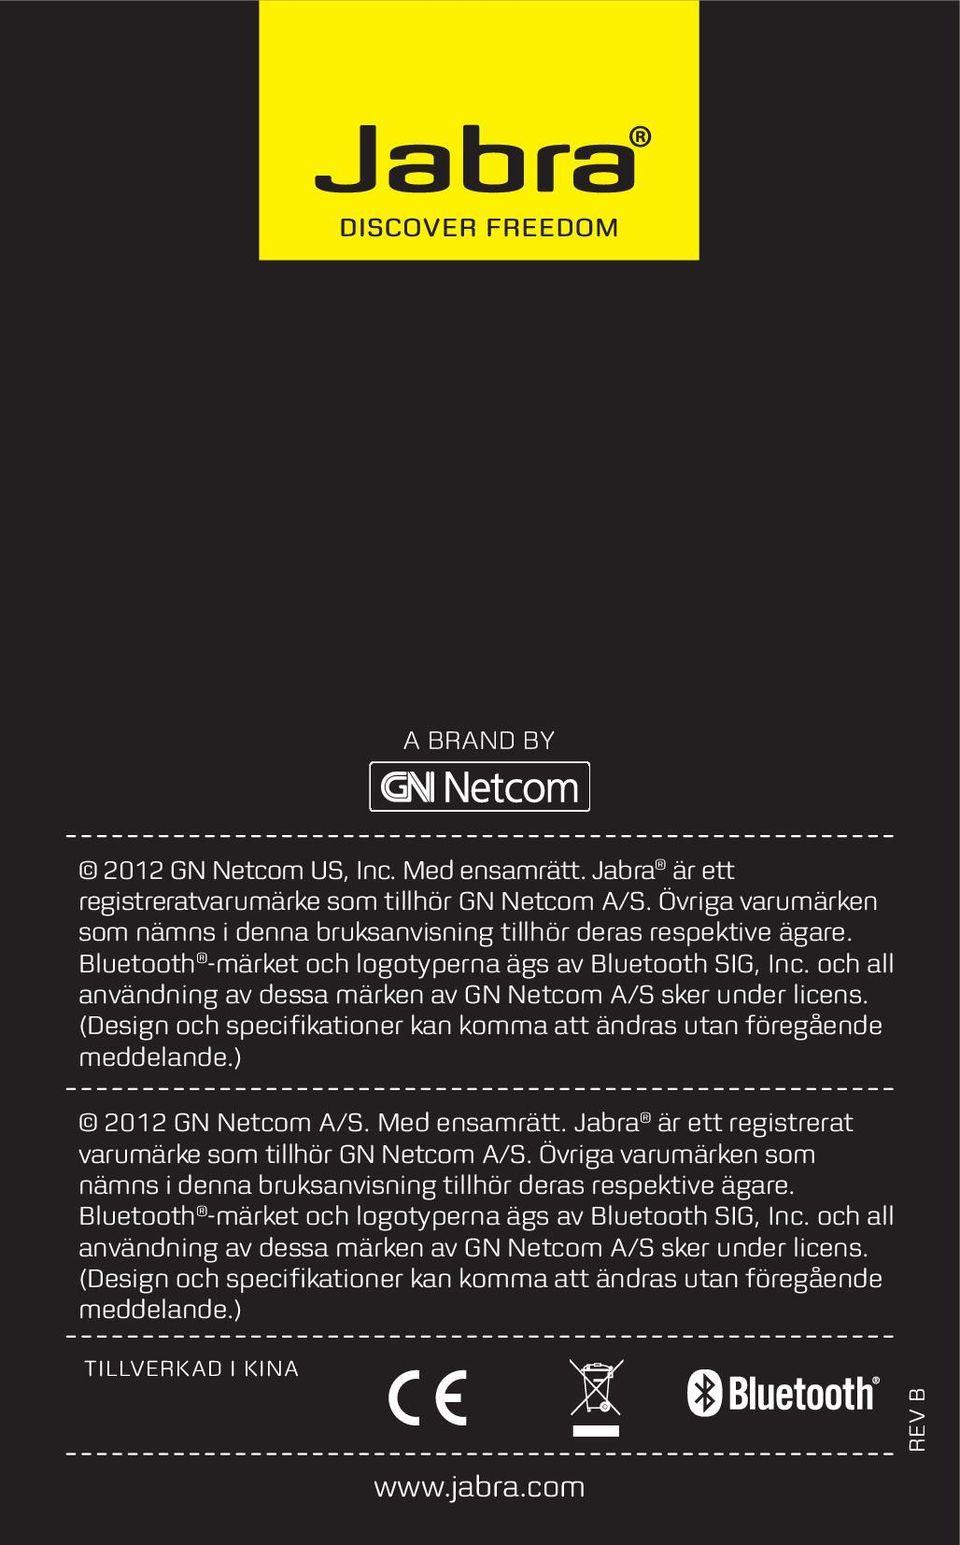 (Design och specifikationer kan komma att ändras utan föregående meddelande.) 2012 GN Netcom A/S. Med ensamrätt. Jabra är ett registrerat varumärke som tillhör GN Netcom A/S.